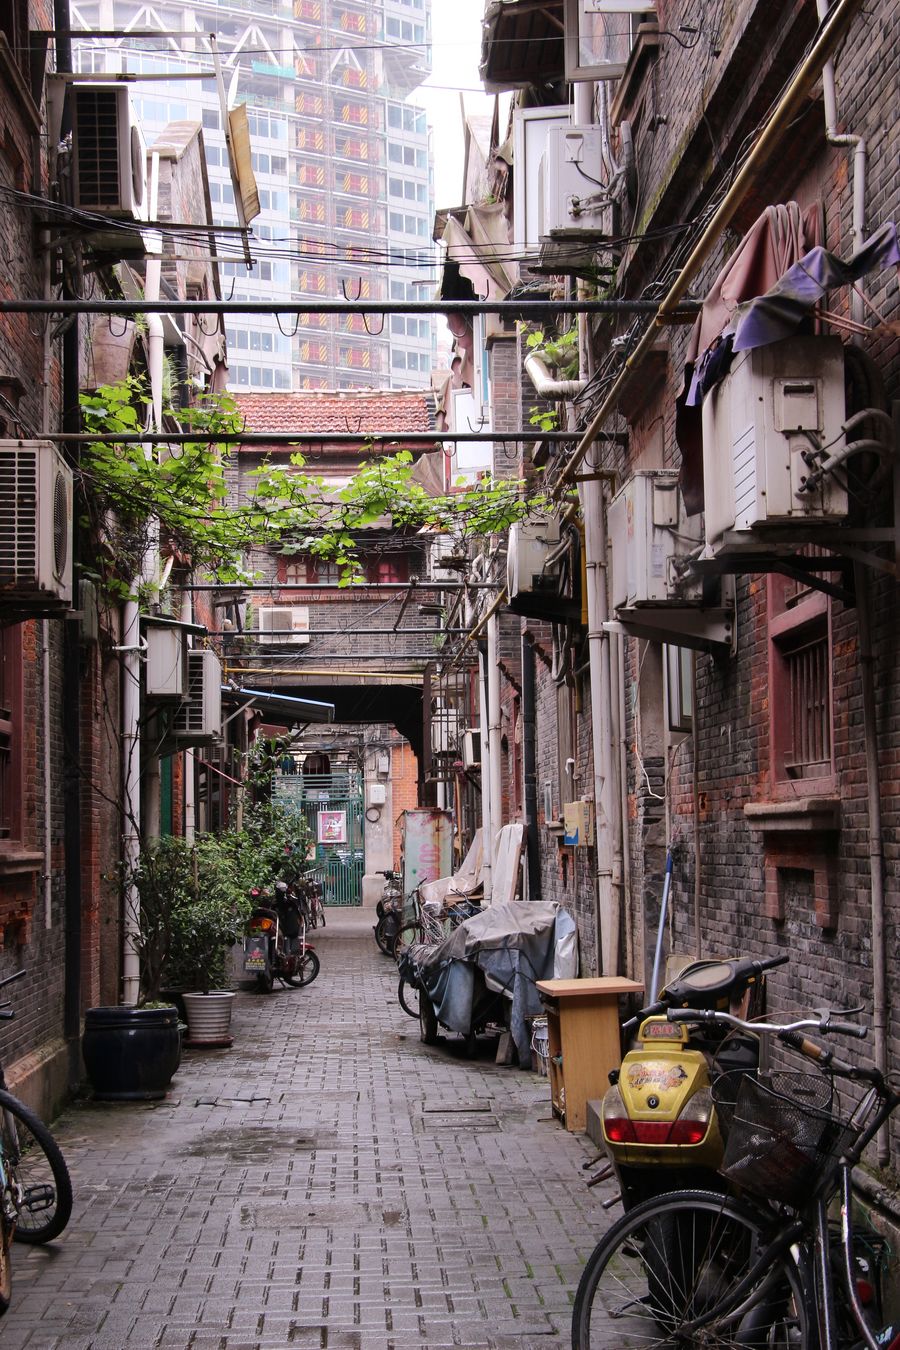 상하이의 오래된 주택가. 얽히고 설킨 골목이 많아 길을 잃기 쉽다.